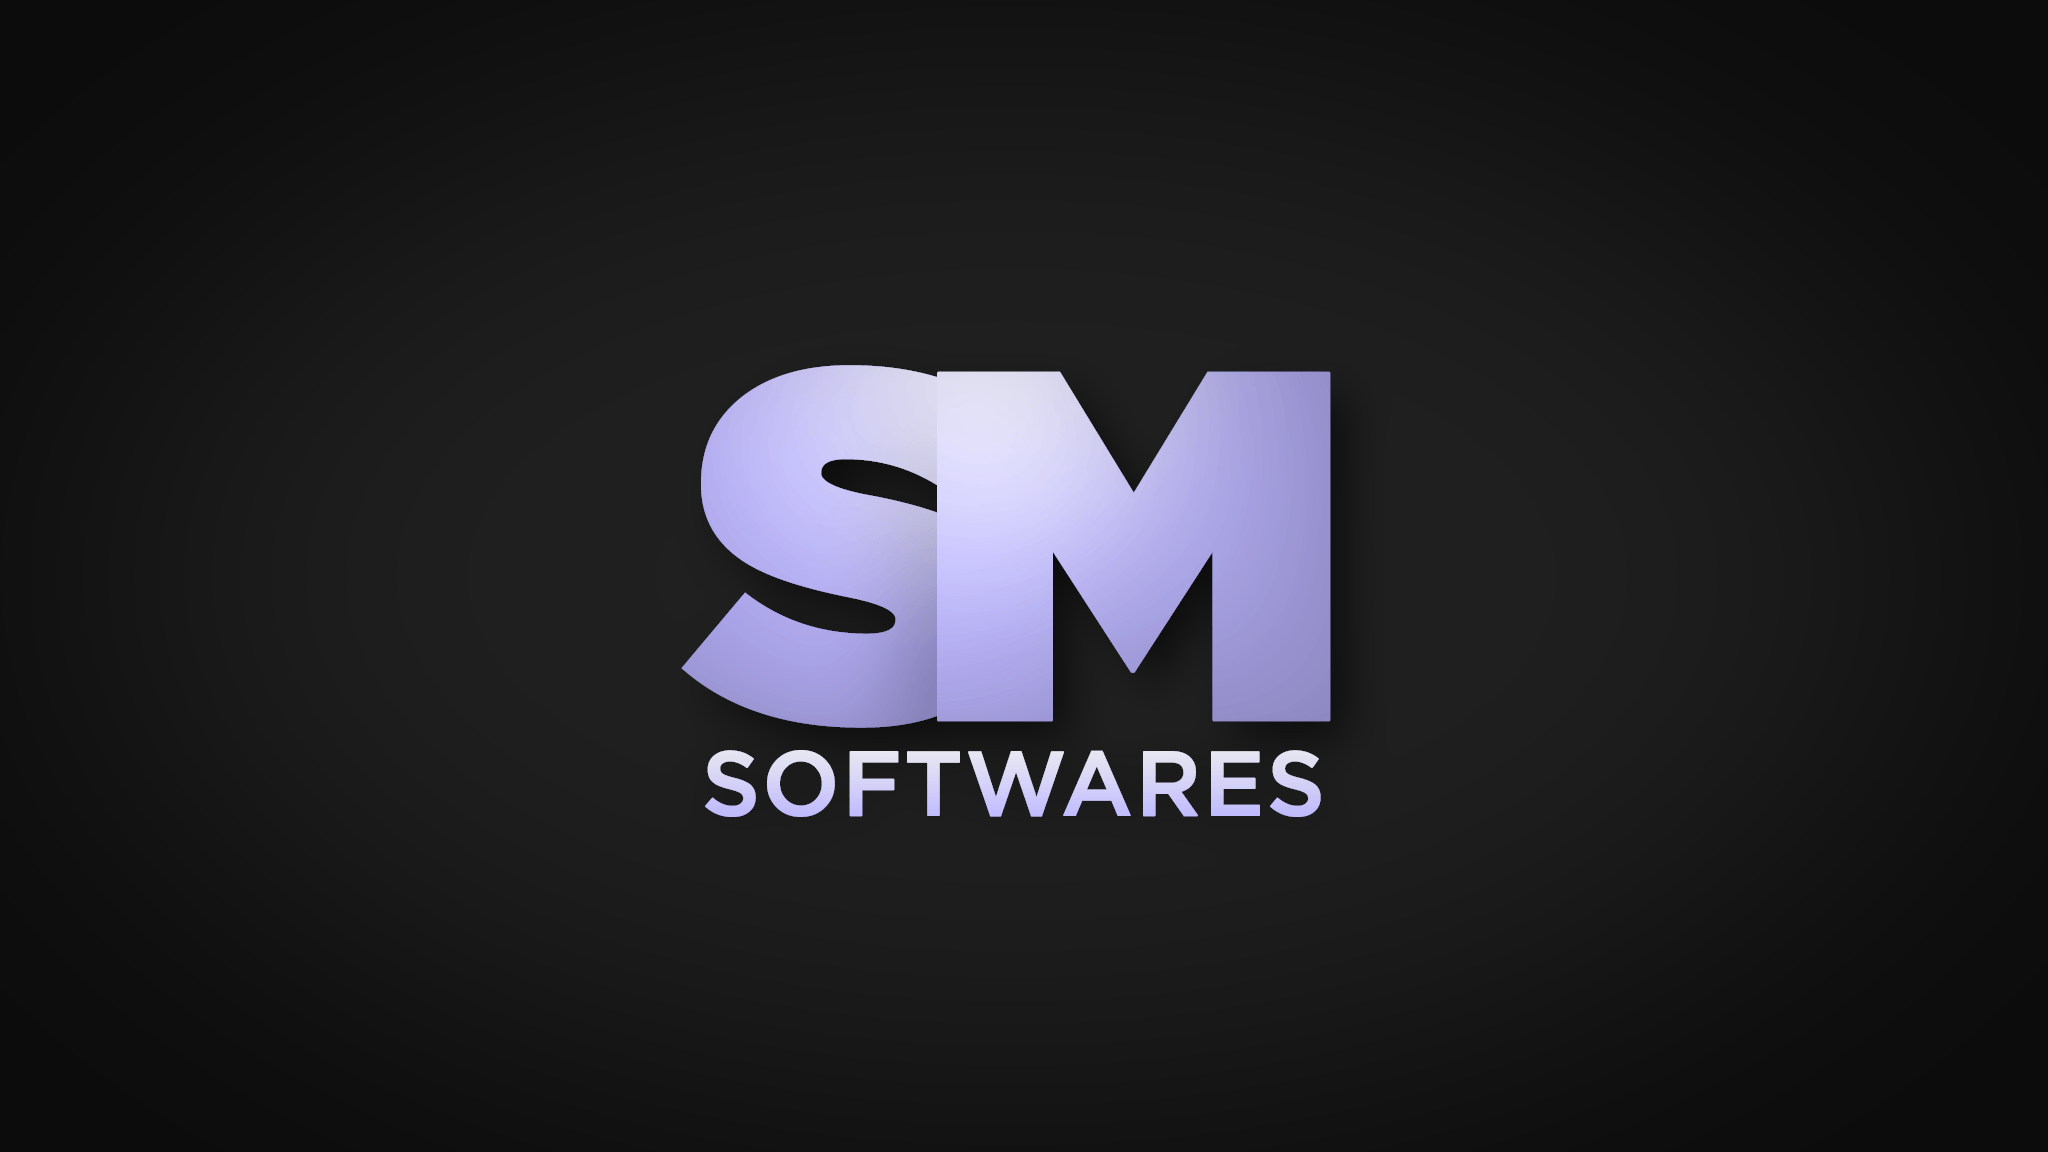 Sao Mai Softwares Logo